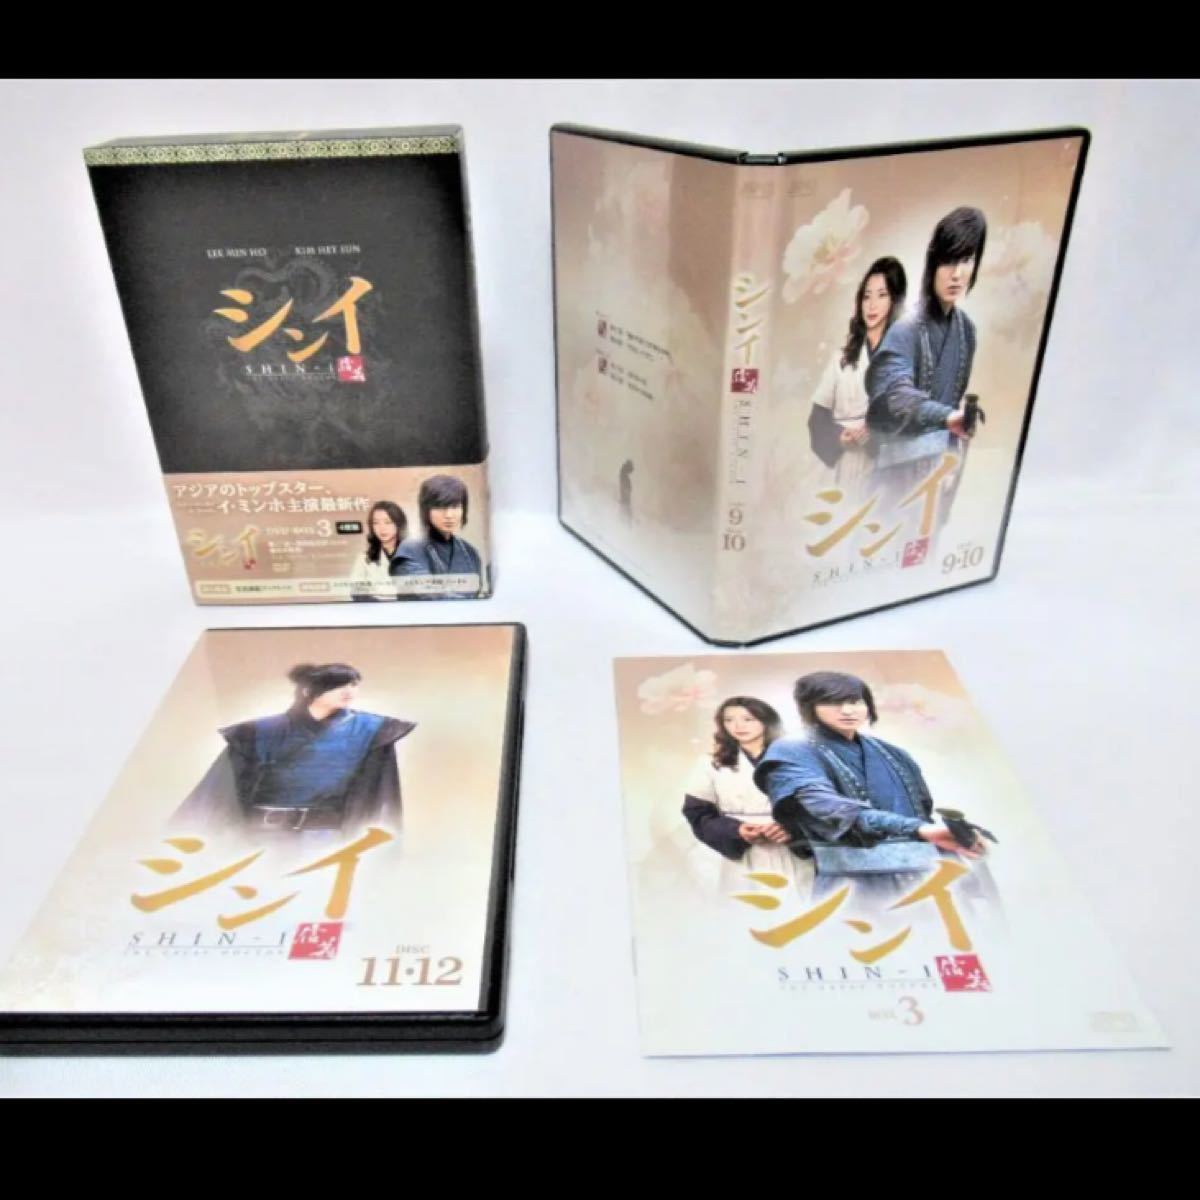 韓国 ドラマ シンイ 信義 DVD BOX3